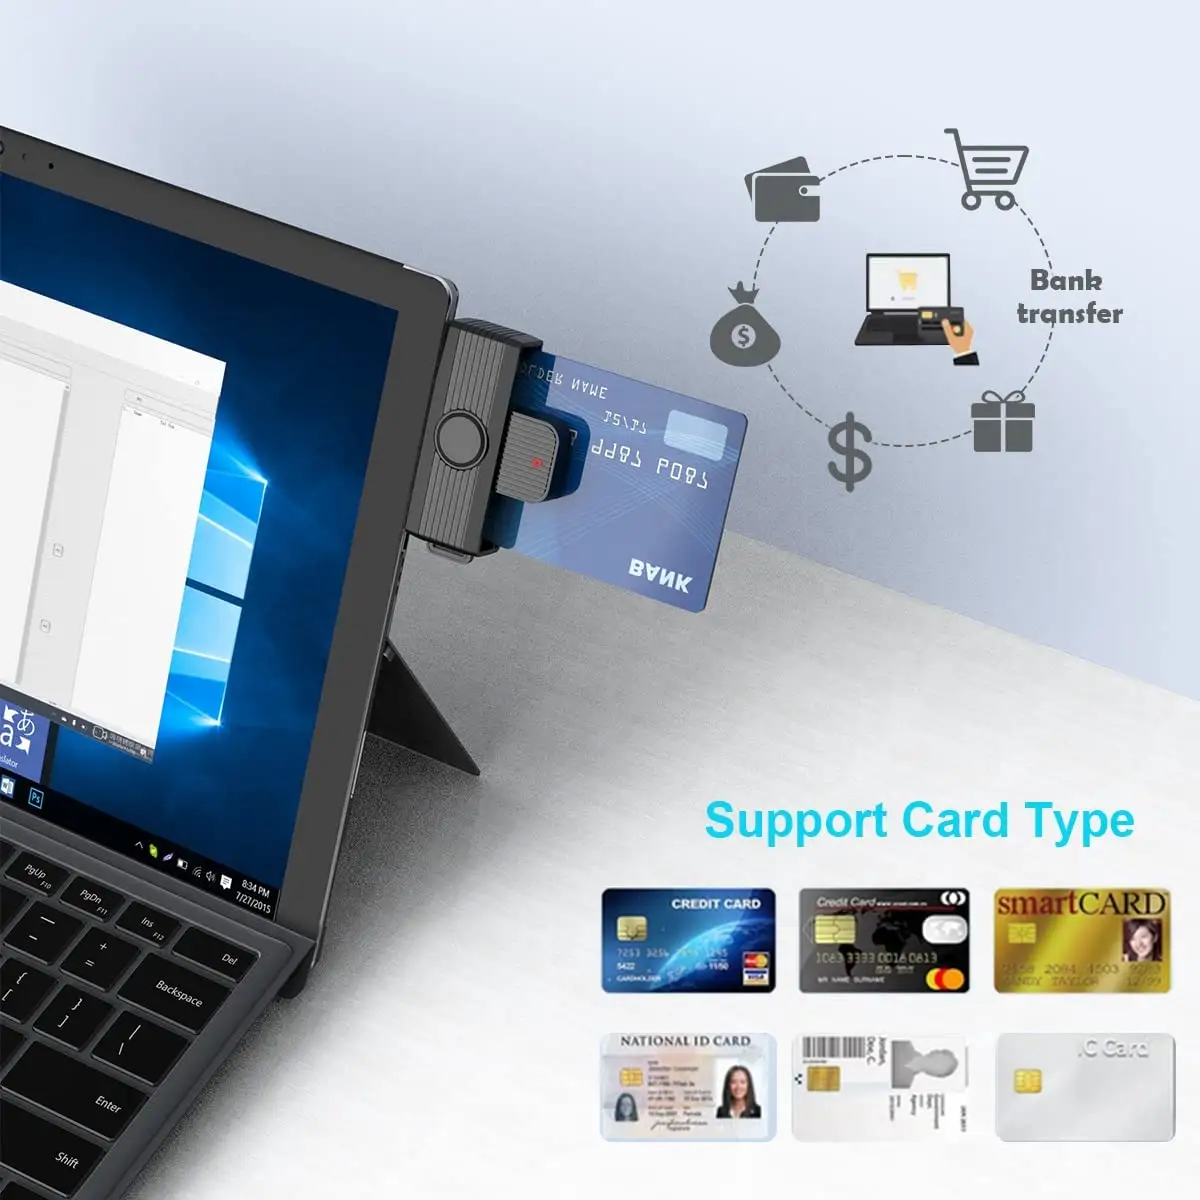 Pembaca kartu pintar Internal USB kompatibel dengan berbagai sistem operasi dan kontak kartu pintar